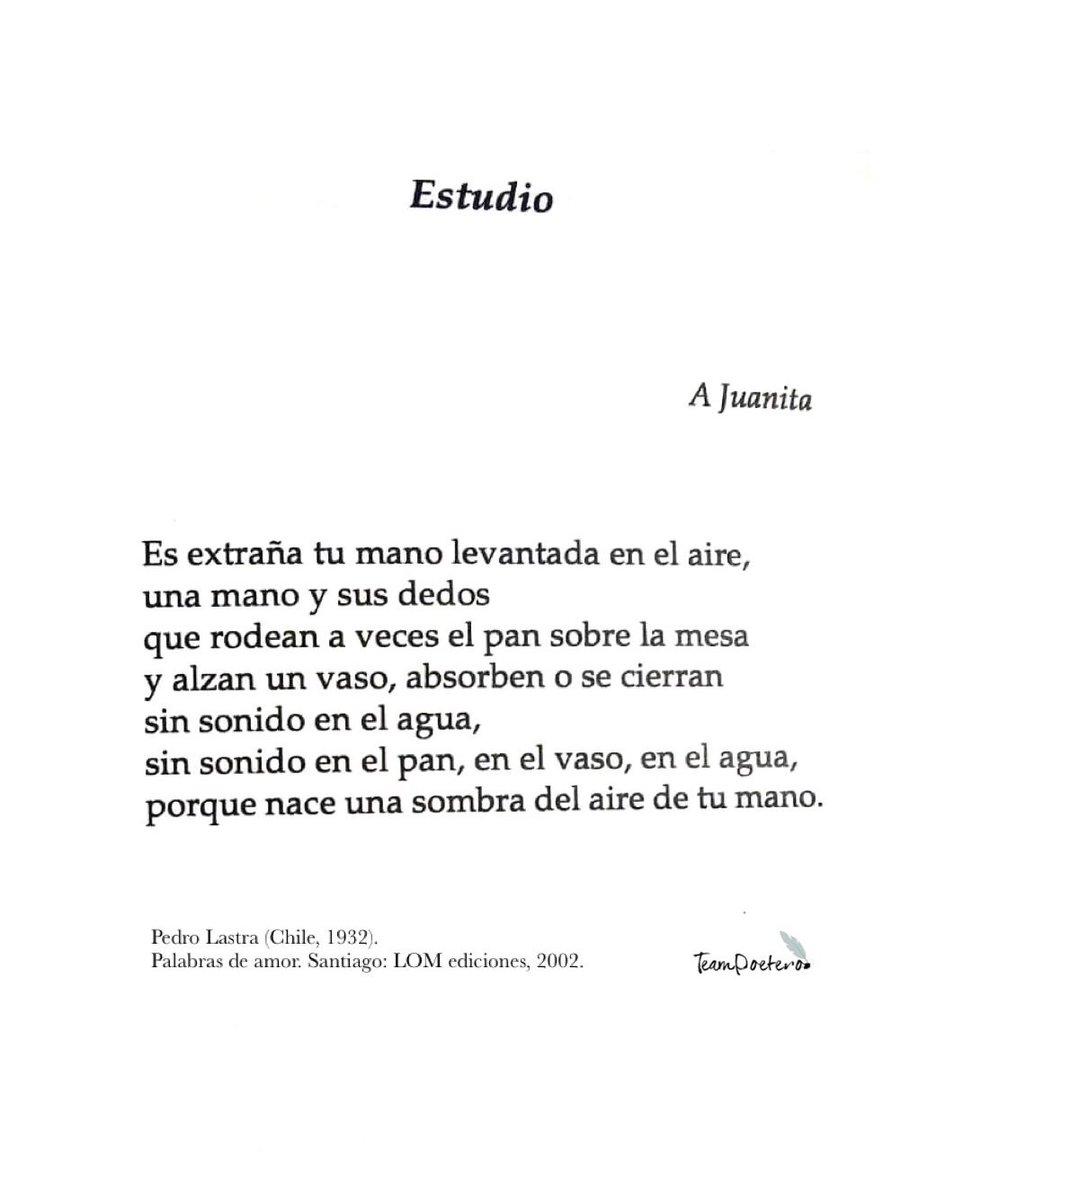 receta Ambos el último Team Poetero on Twitter: "Poema “Estudio” del libro “Palabras del amor” de:  Pedro Lastra (Chile, 1932) @LomEdiciones https://t.co/INxFJUknMX" / Twitter